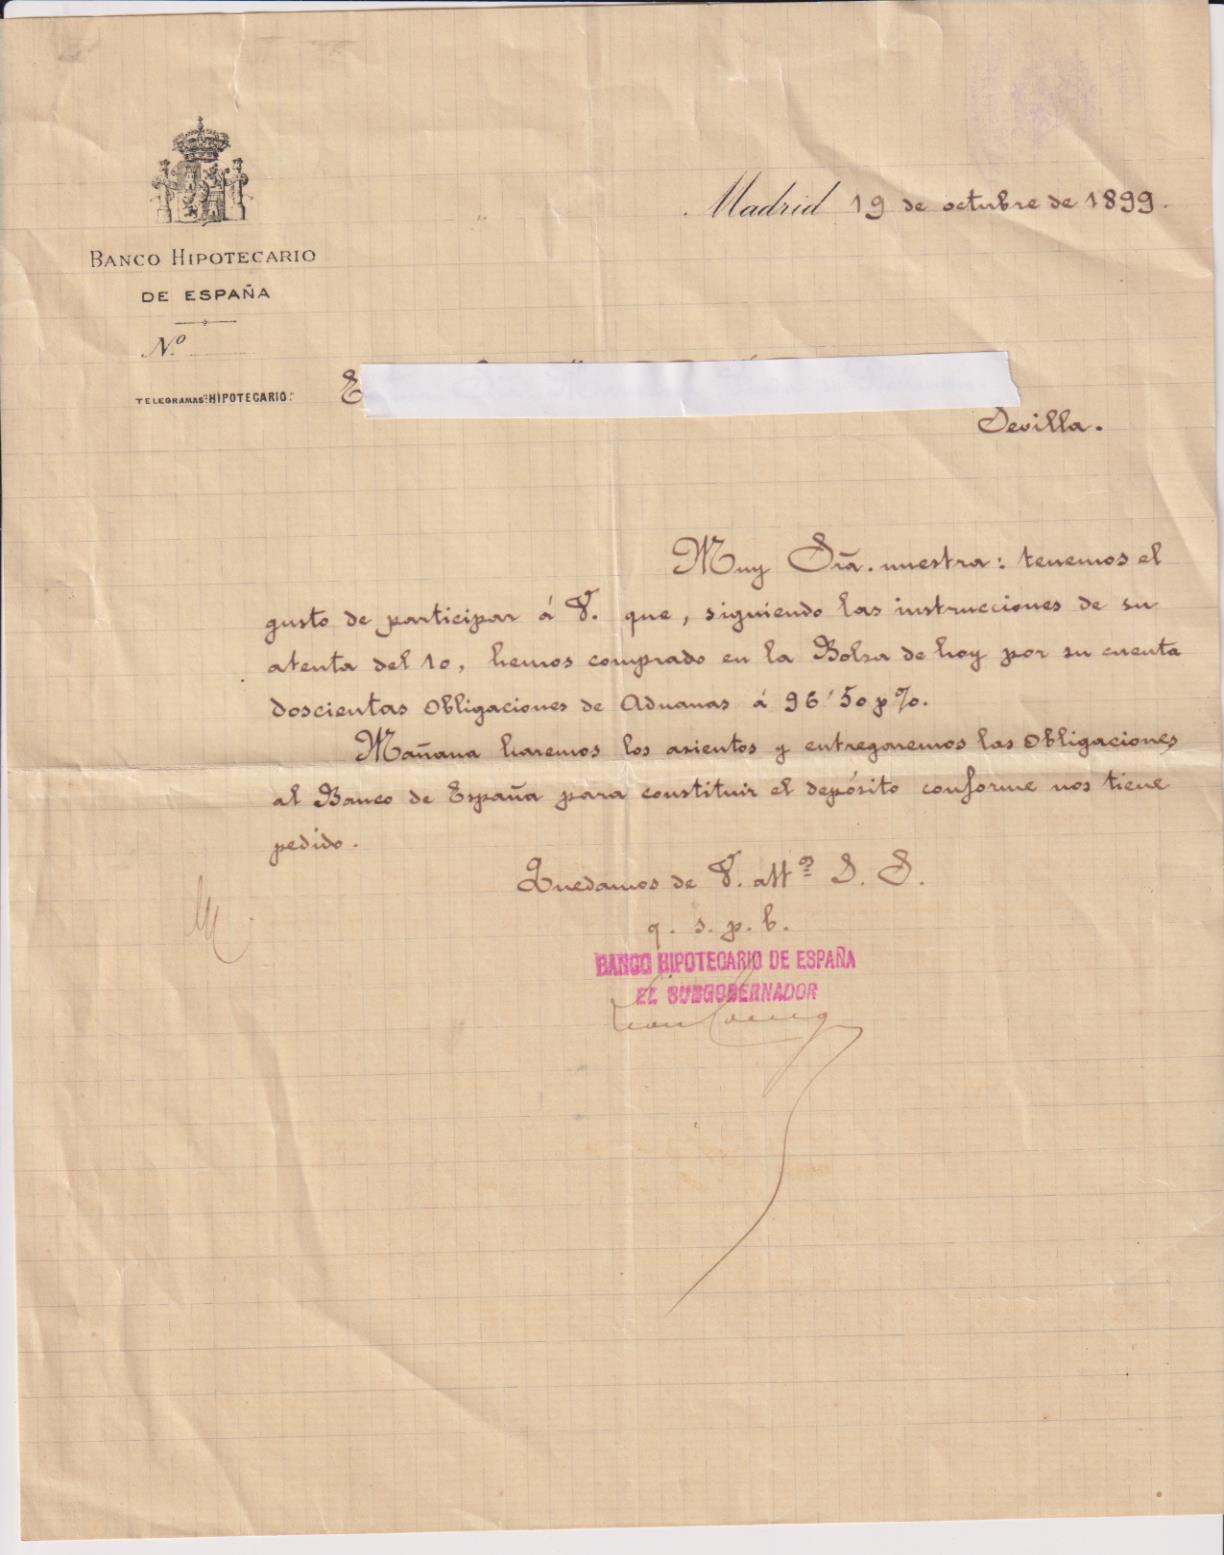 Banco Hipotecario de España. Telegrama Hipotecario. Comunicando la compra de 200 acciones de Aduanas. Madrid 19 Octubre 1899